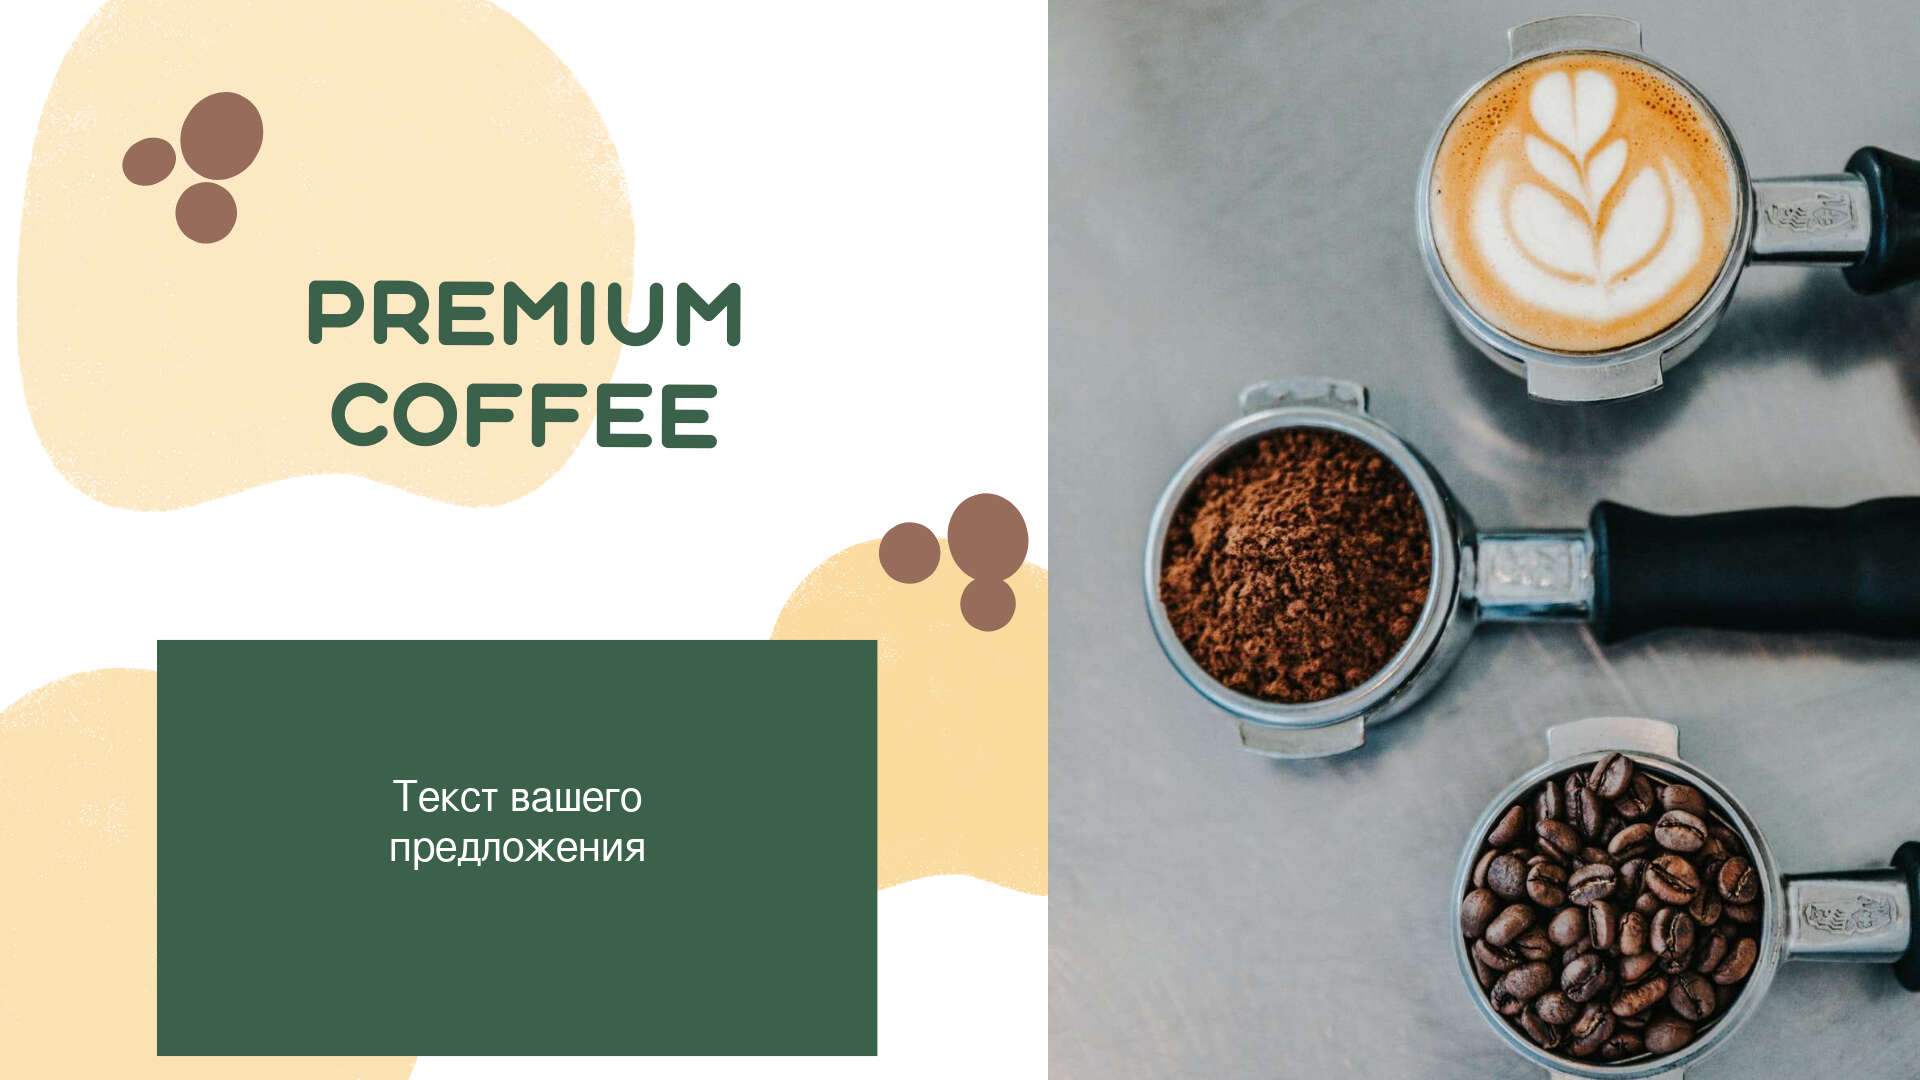 Черный кофе в зернах а также молотый кофе и капучино в рекламном посте для сообщества в соцсетях